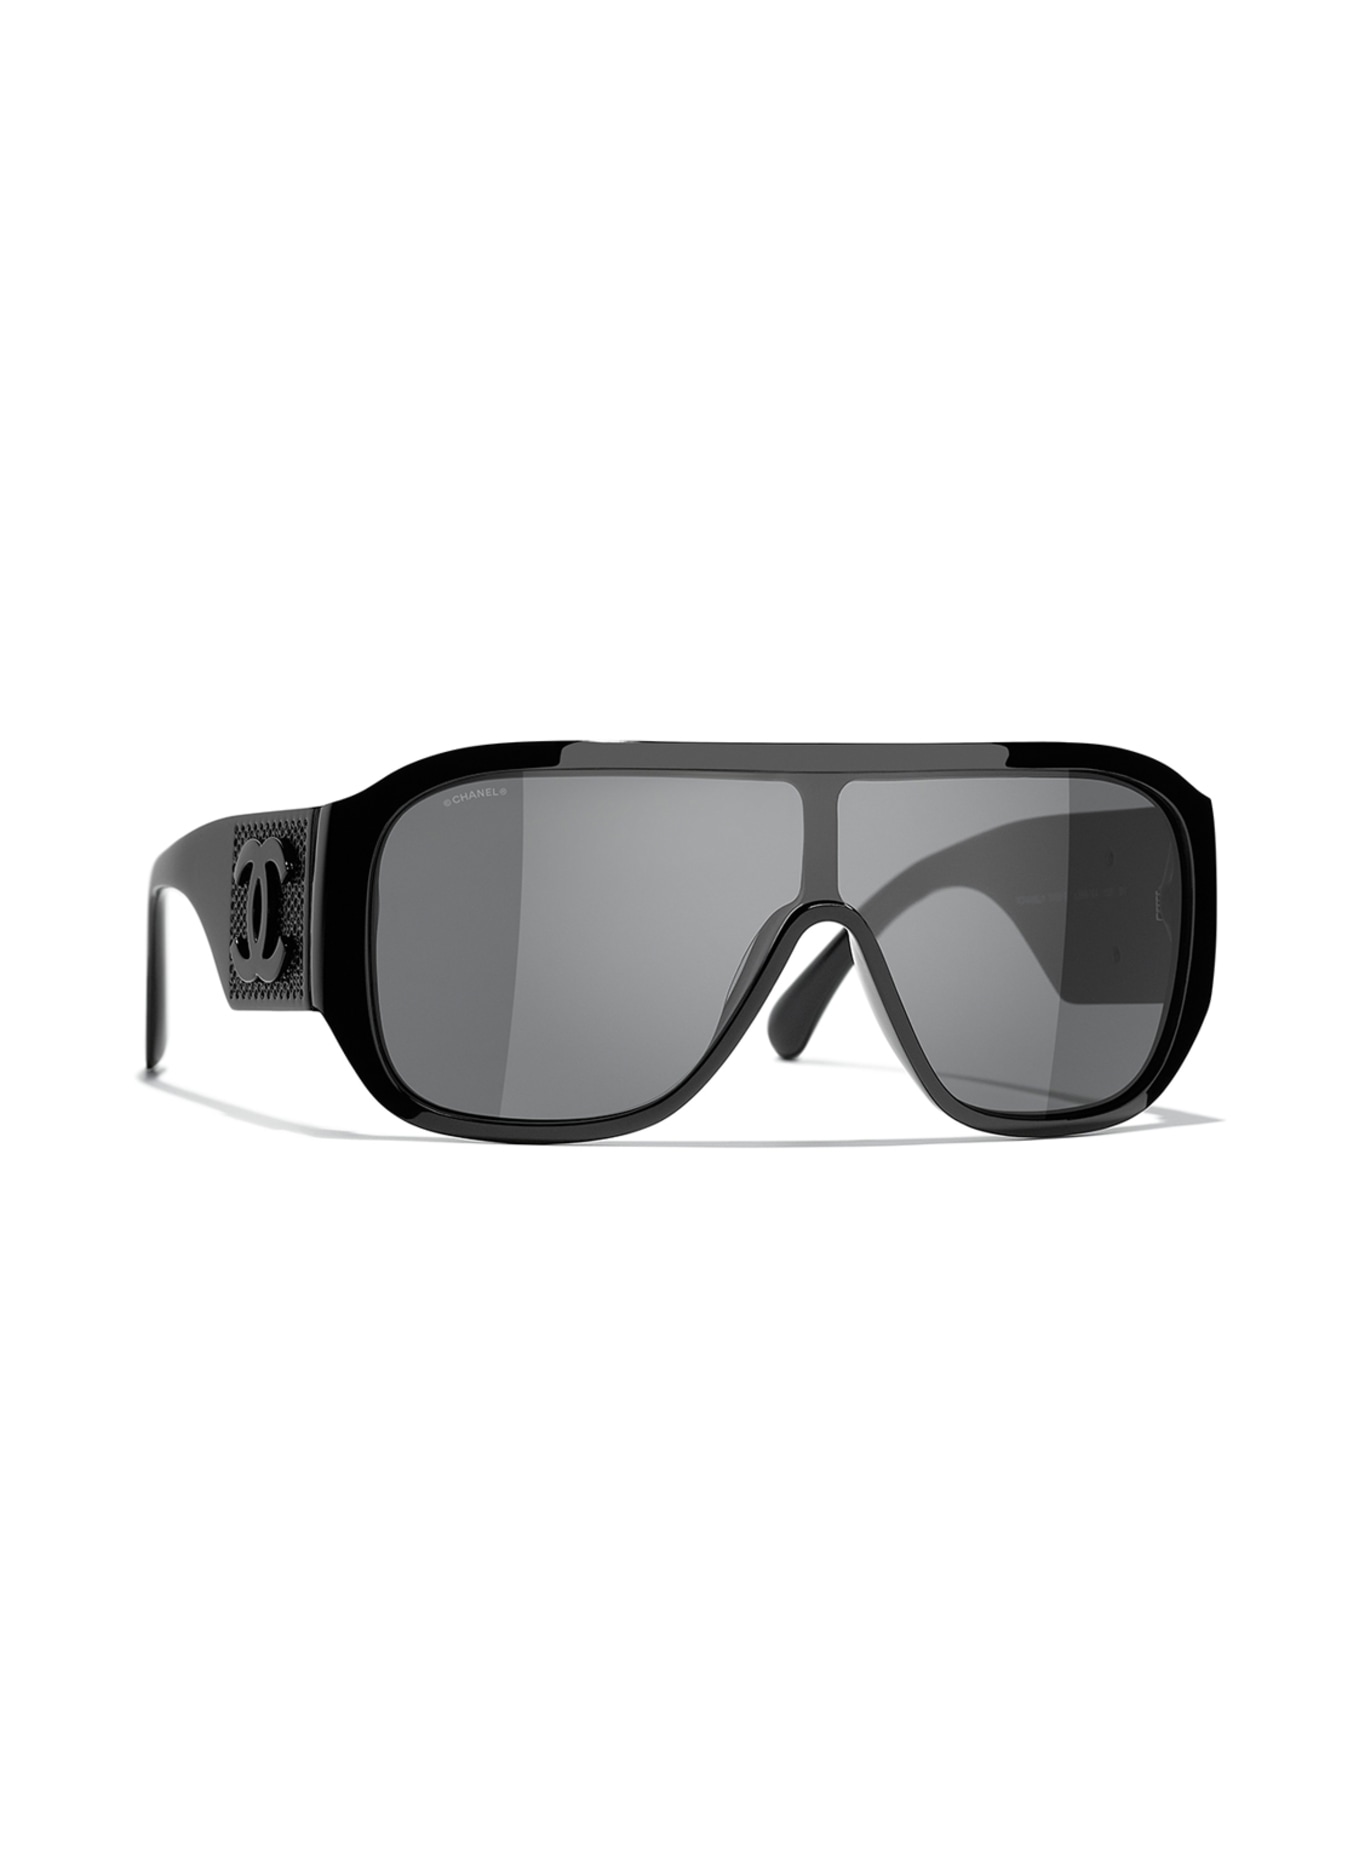 Sunglasses Chanel White in Plastic  15257060